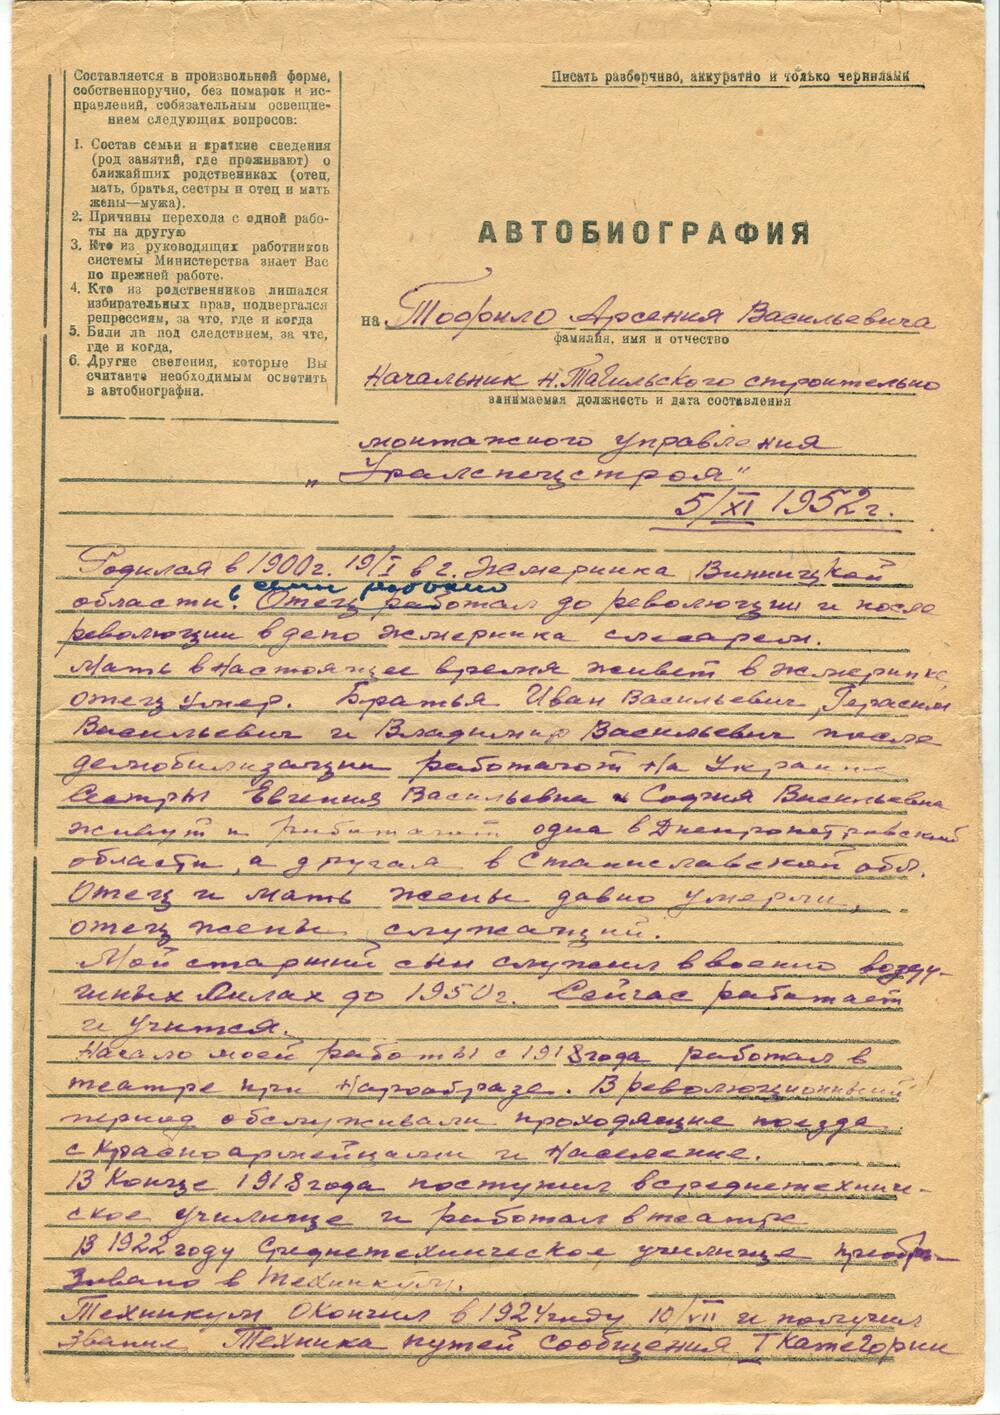 Автобиография Тофило Арсения Васильевича. 5 ноября 1952 г.